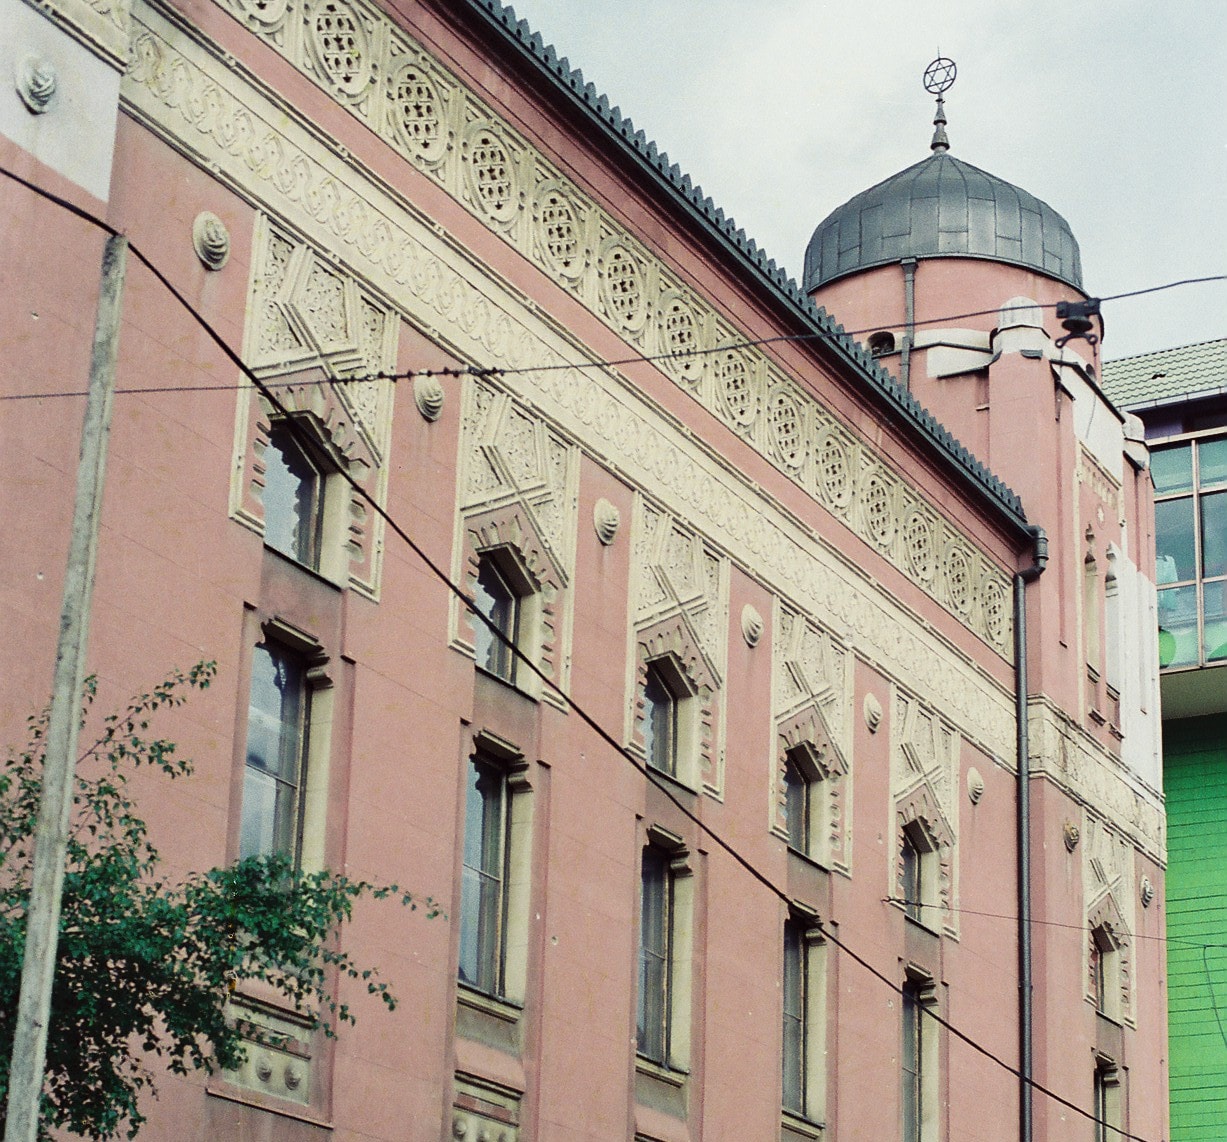 בית הכנסת האשכנזי בסרייבו (צילום: חנני רפופורט)